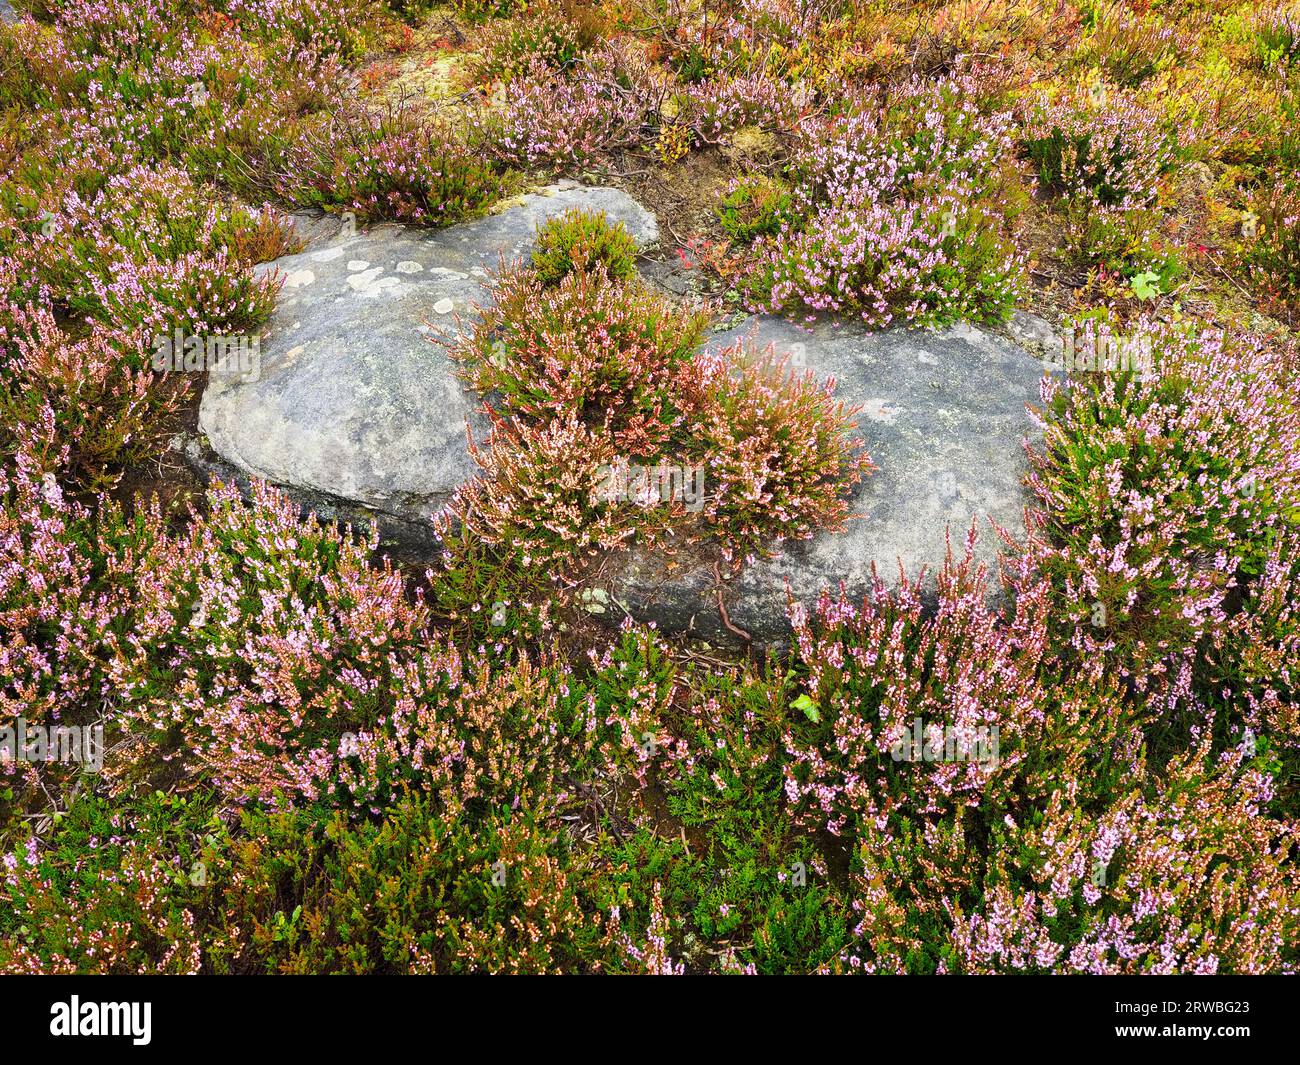 Un rocher en pierre de taille entouré de bruyère en fleur sur des landes au-dessus de guise Cliff près de Pateley Bridge Nidderdale North Yorkshire Angleterre Banque D'Images